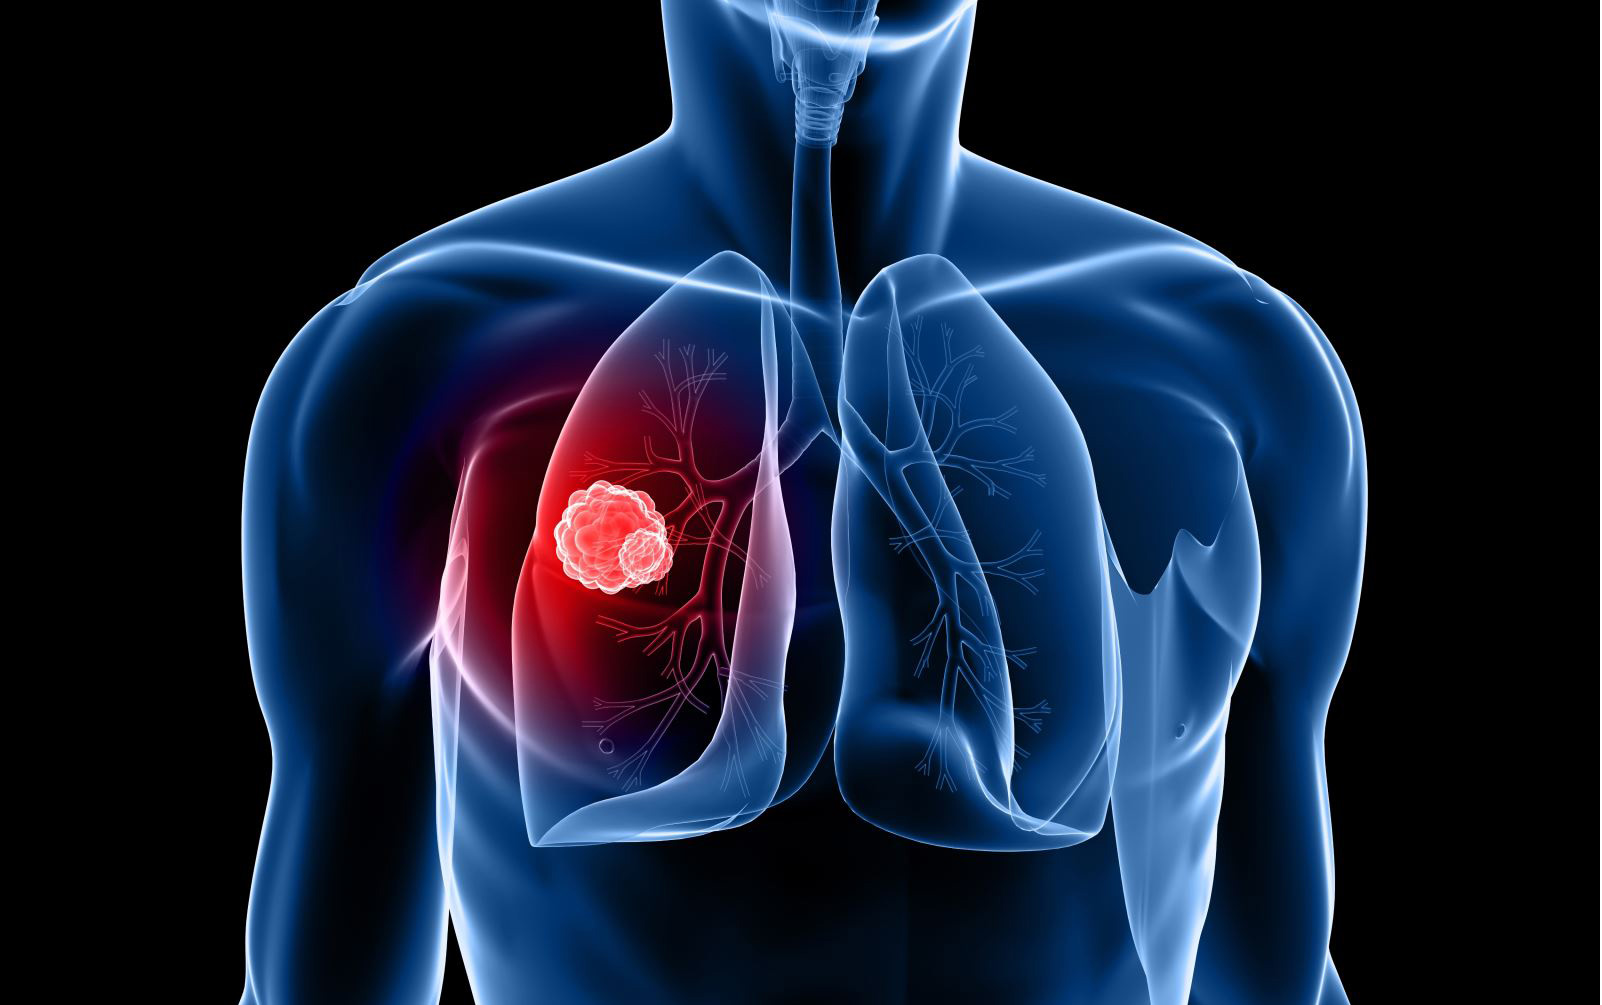 Καρκίνος του πνεύμονα: Αυτό είναι το χάπι που μειώνει τον κίνδυνο θανάτου κατά 50%